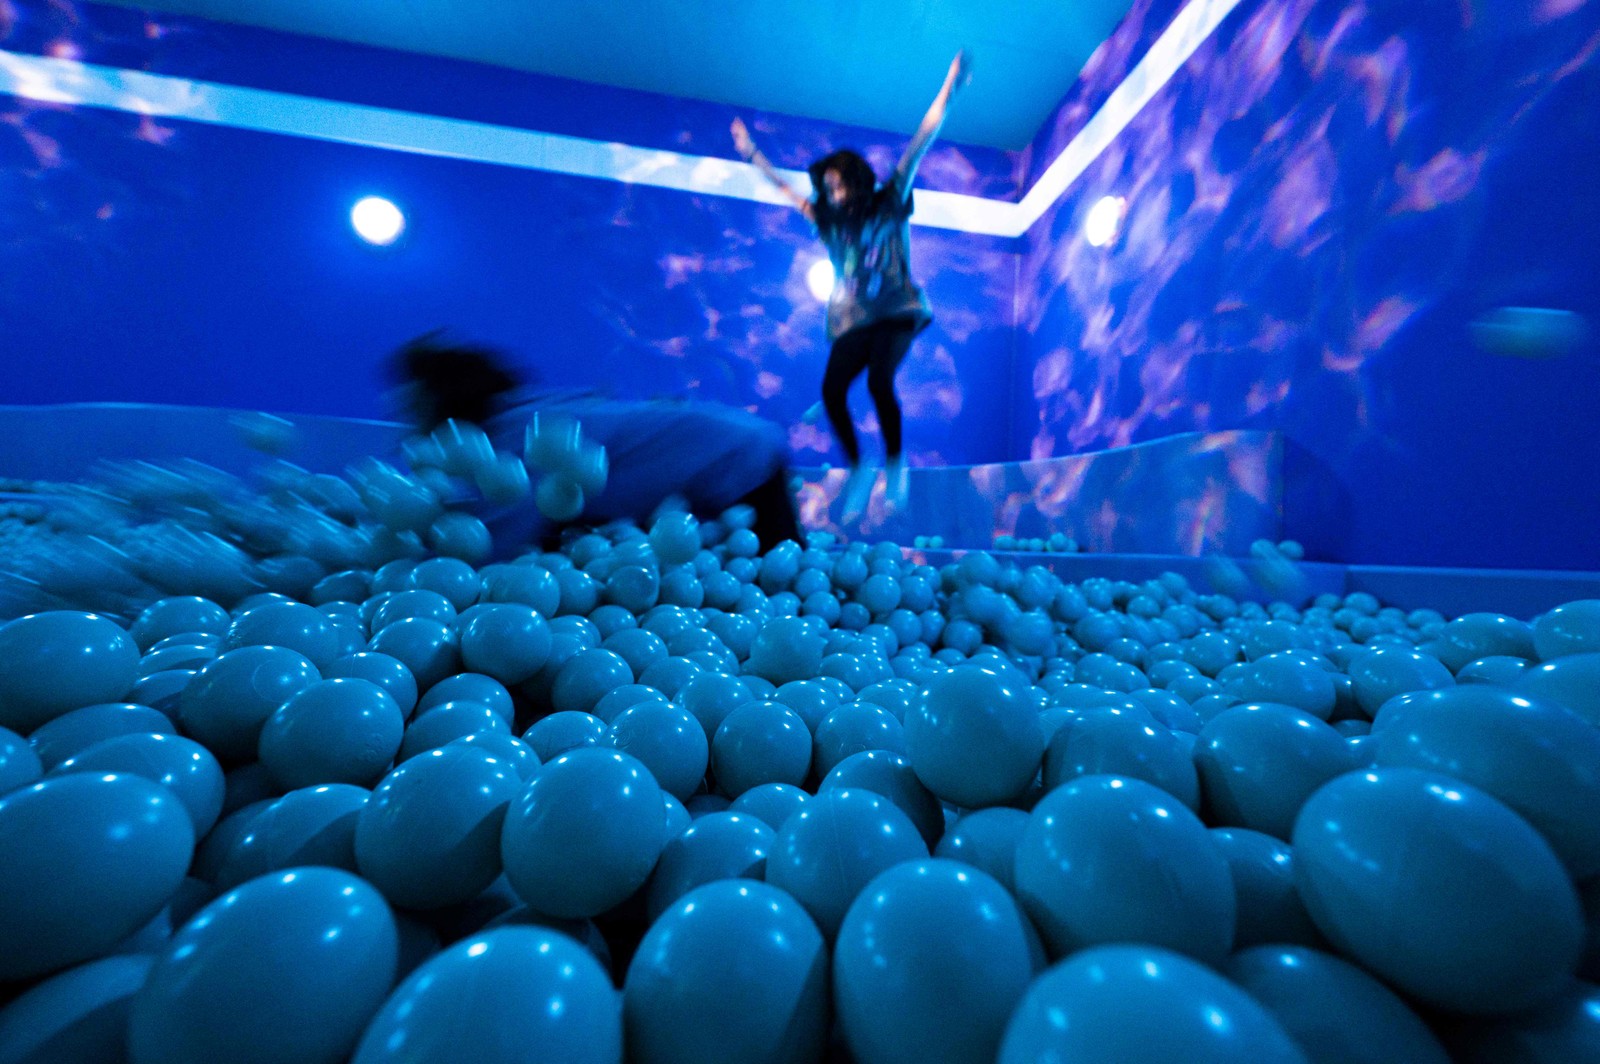 Que tal uma foto pulando numa piscina de bolas gigantes?AFP